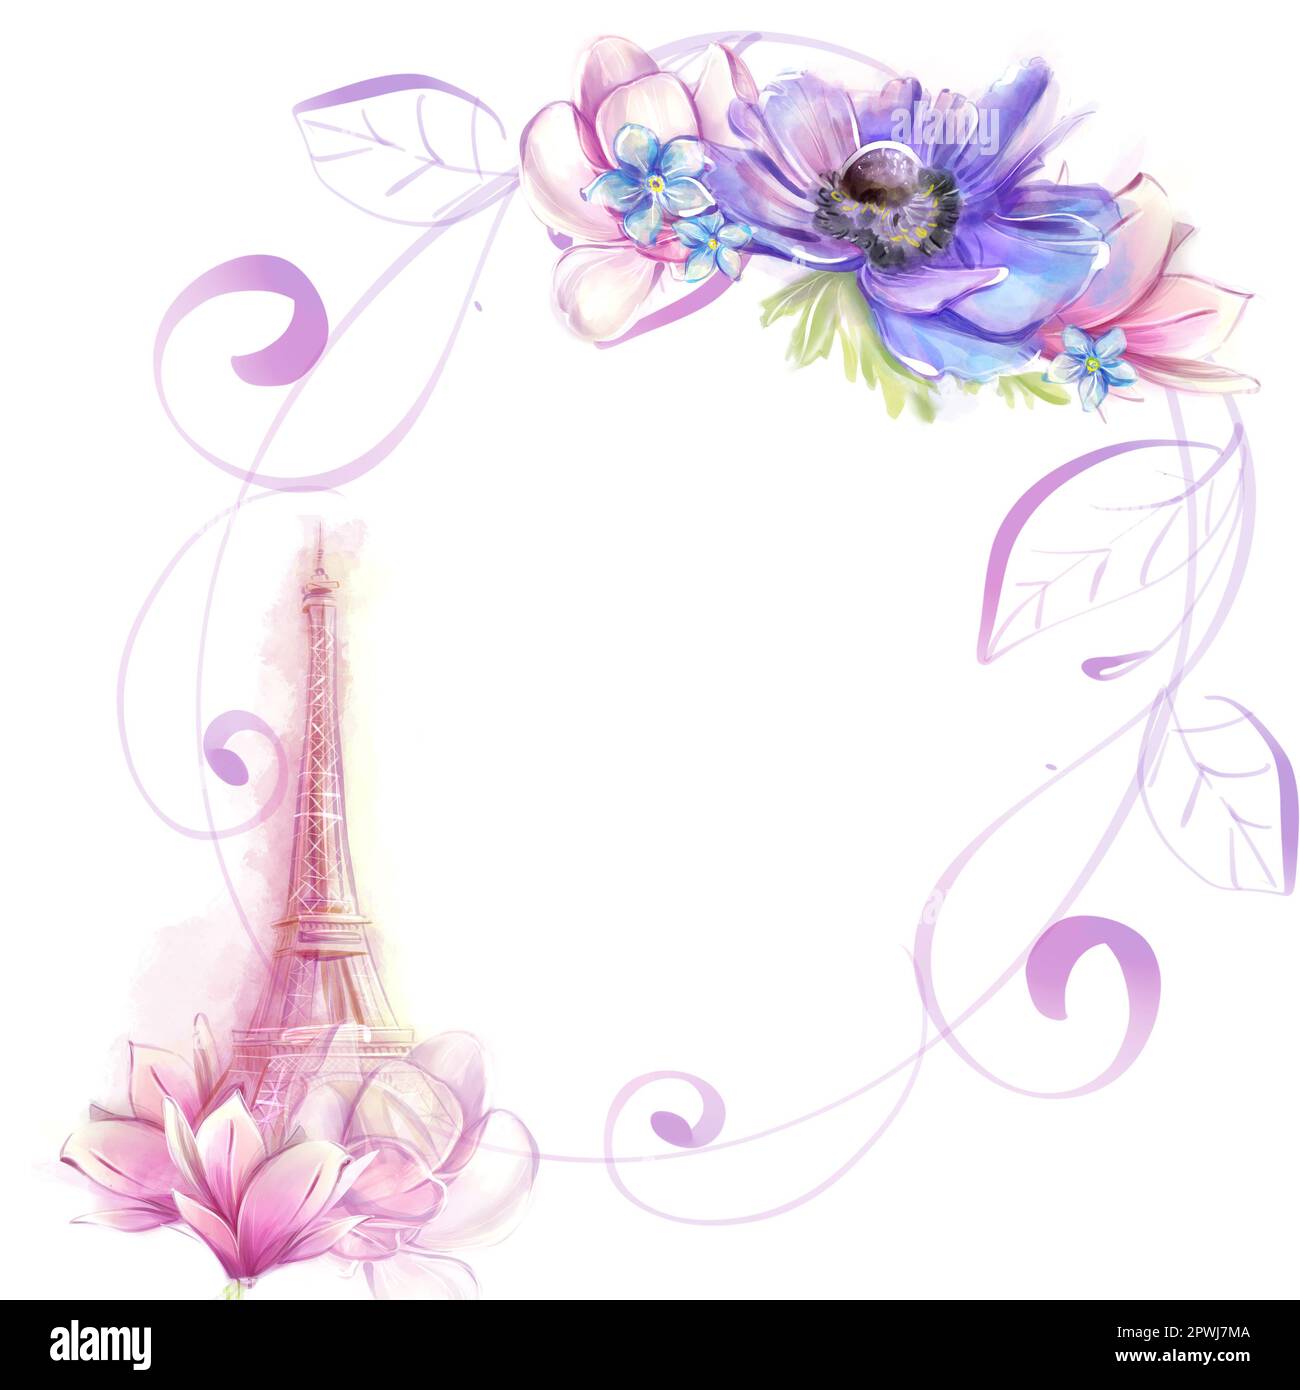 Runder Rahmen in Aquarellfarben mit eiffelturm und Frühlingsblumen, Magnolien. Romantisches Pariser Design. Stockfoto